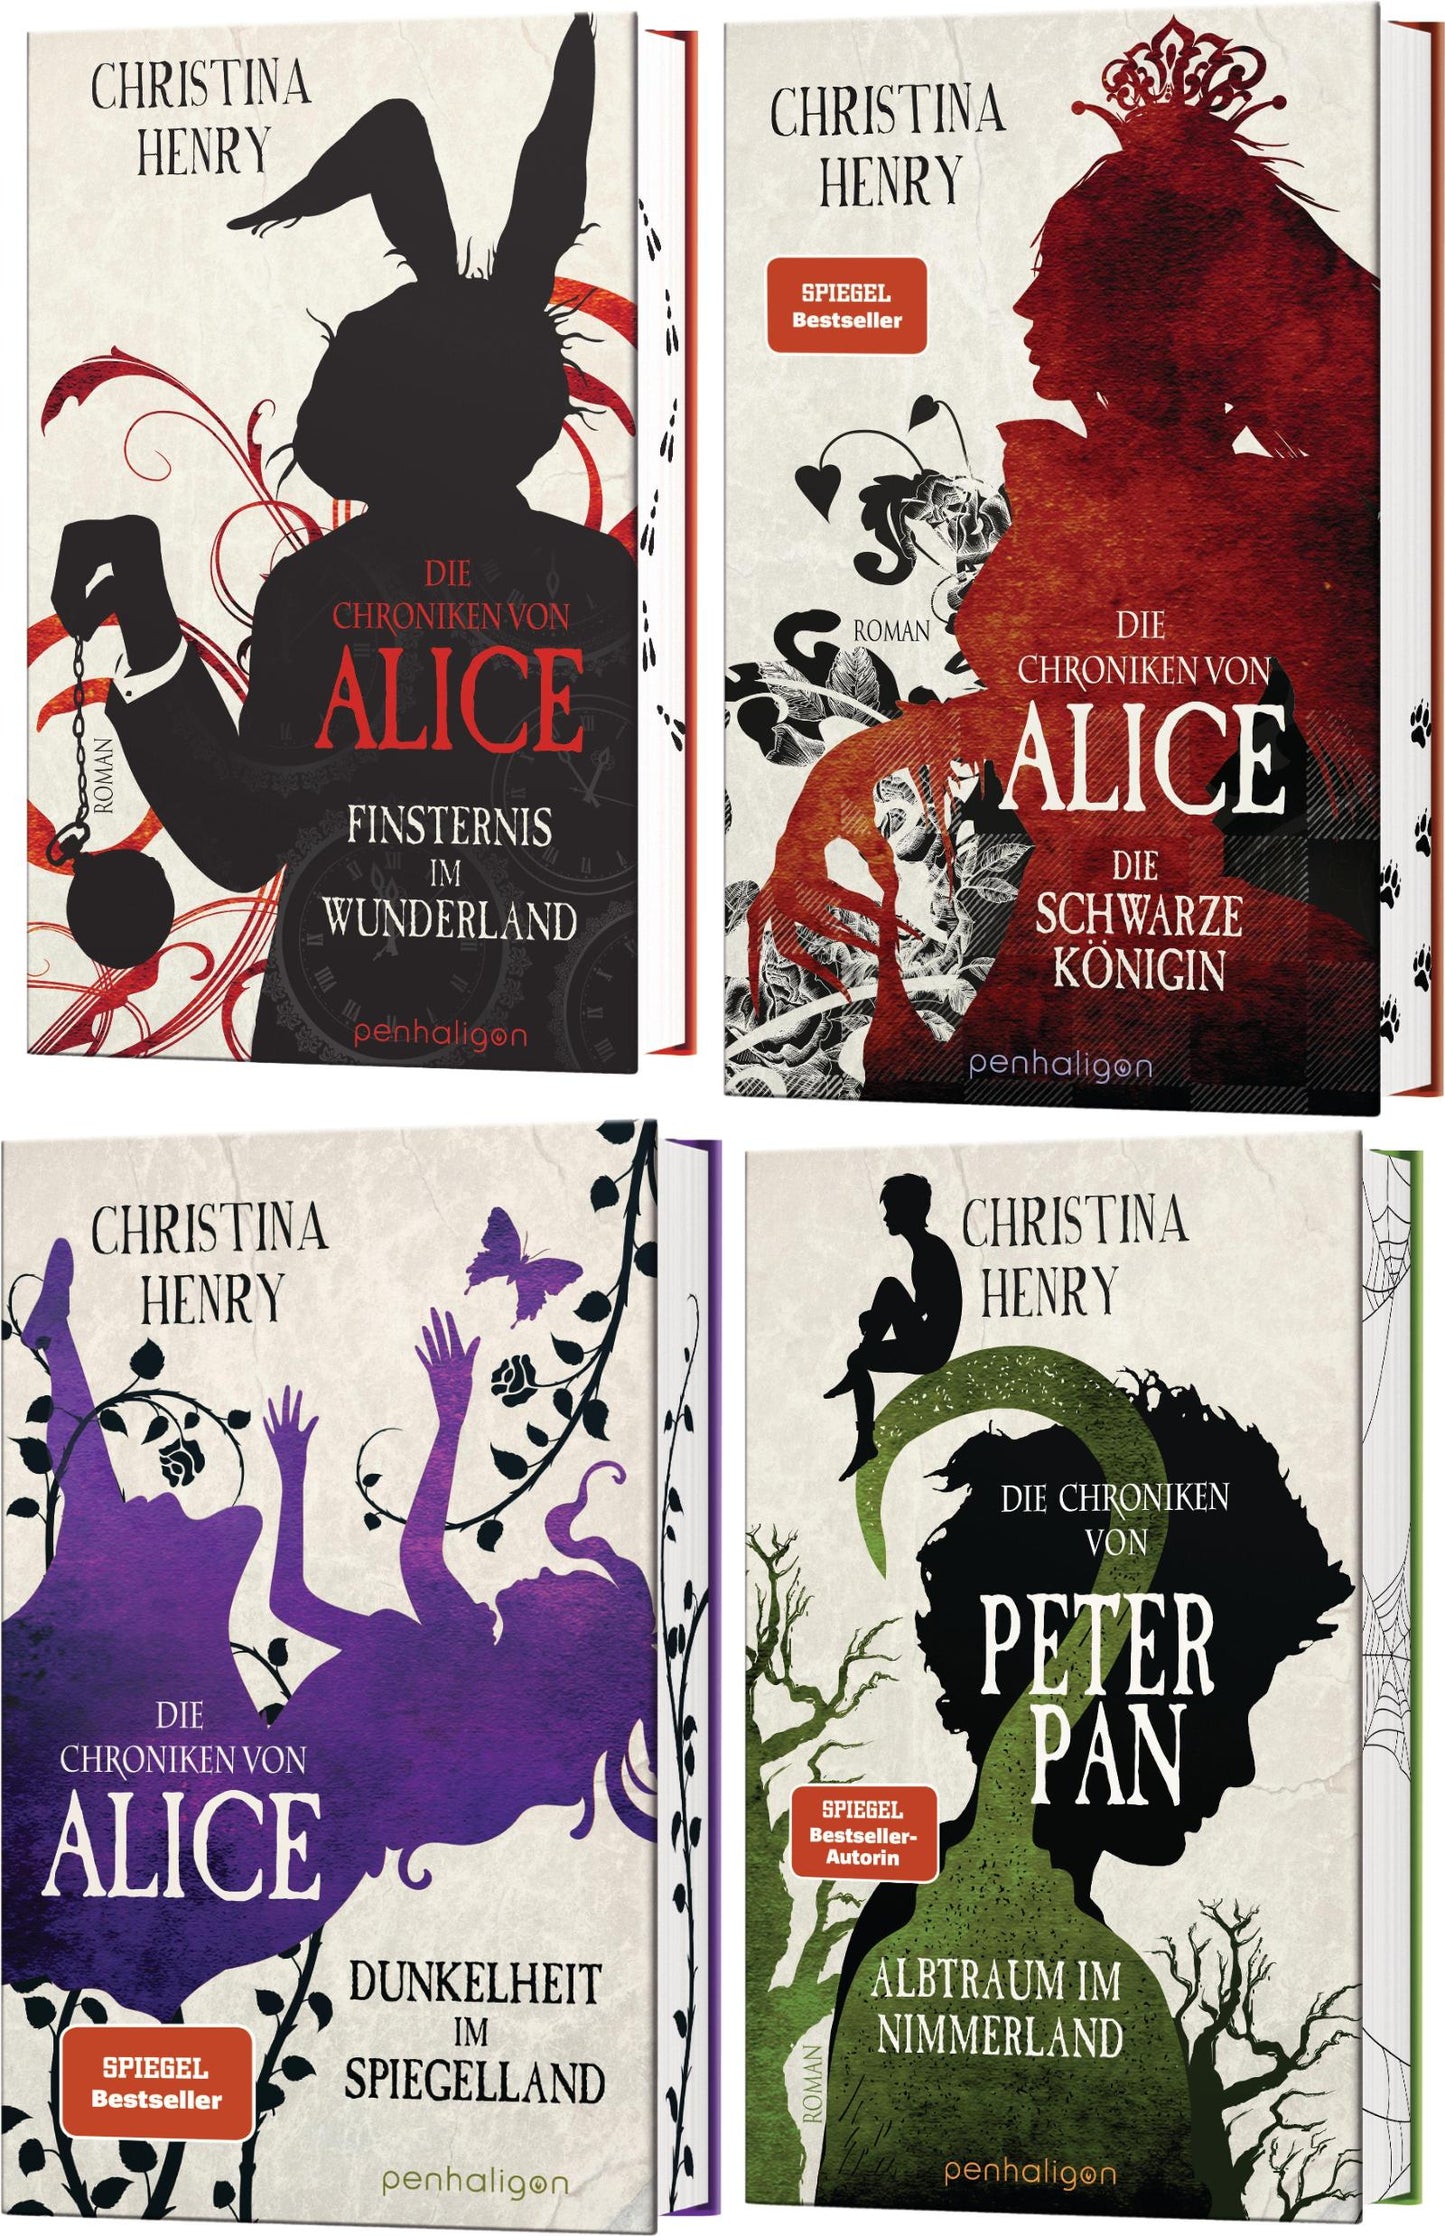 Die dunklen Chroniken - Chroniken von Alice und Peter Pan Band 1-4 plus 1 exklusives Postkartenset